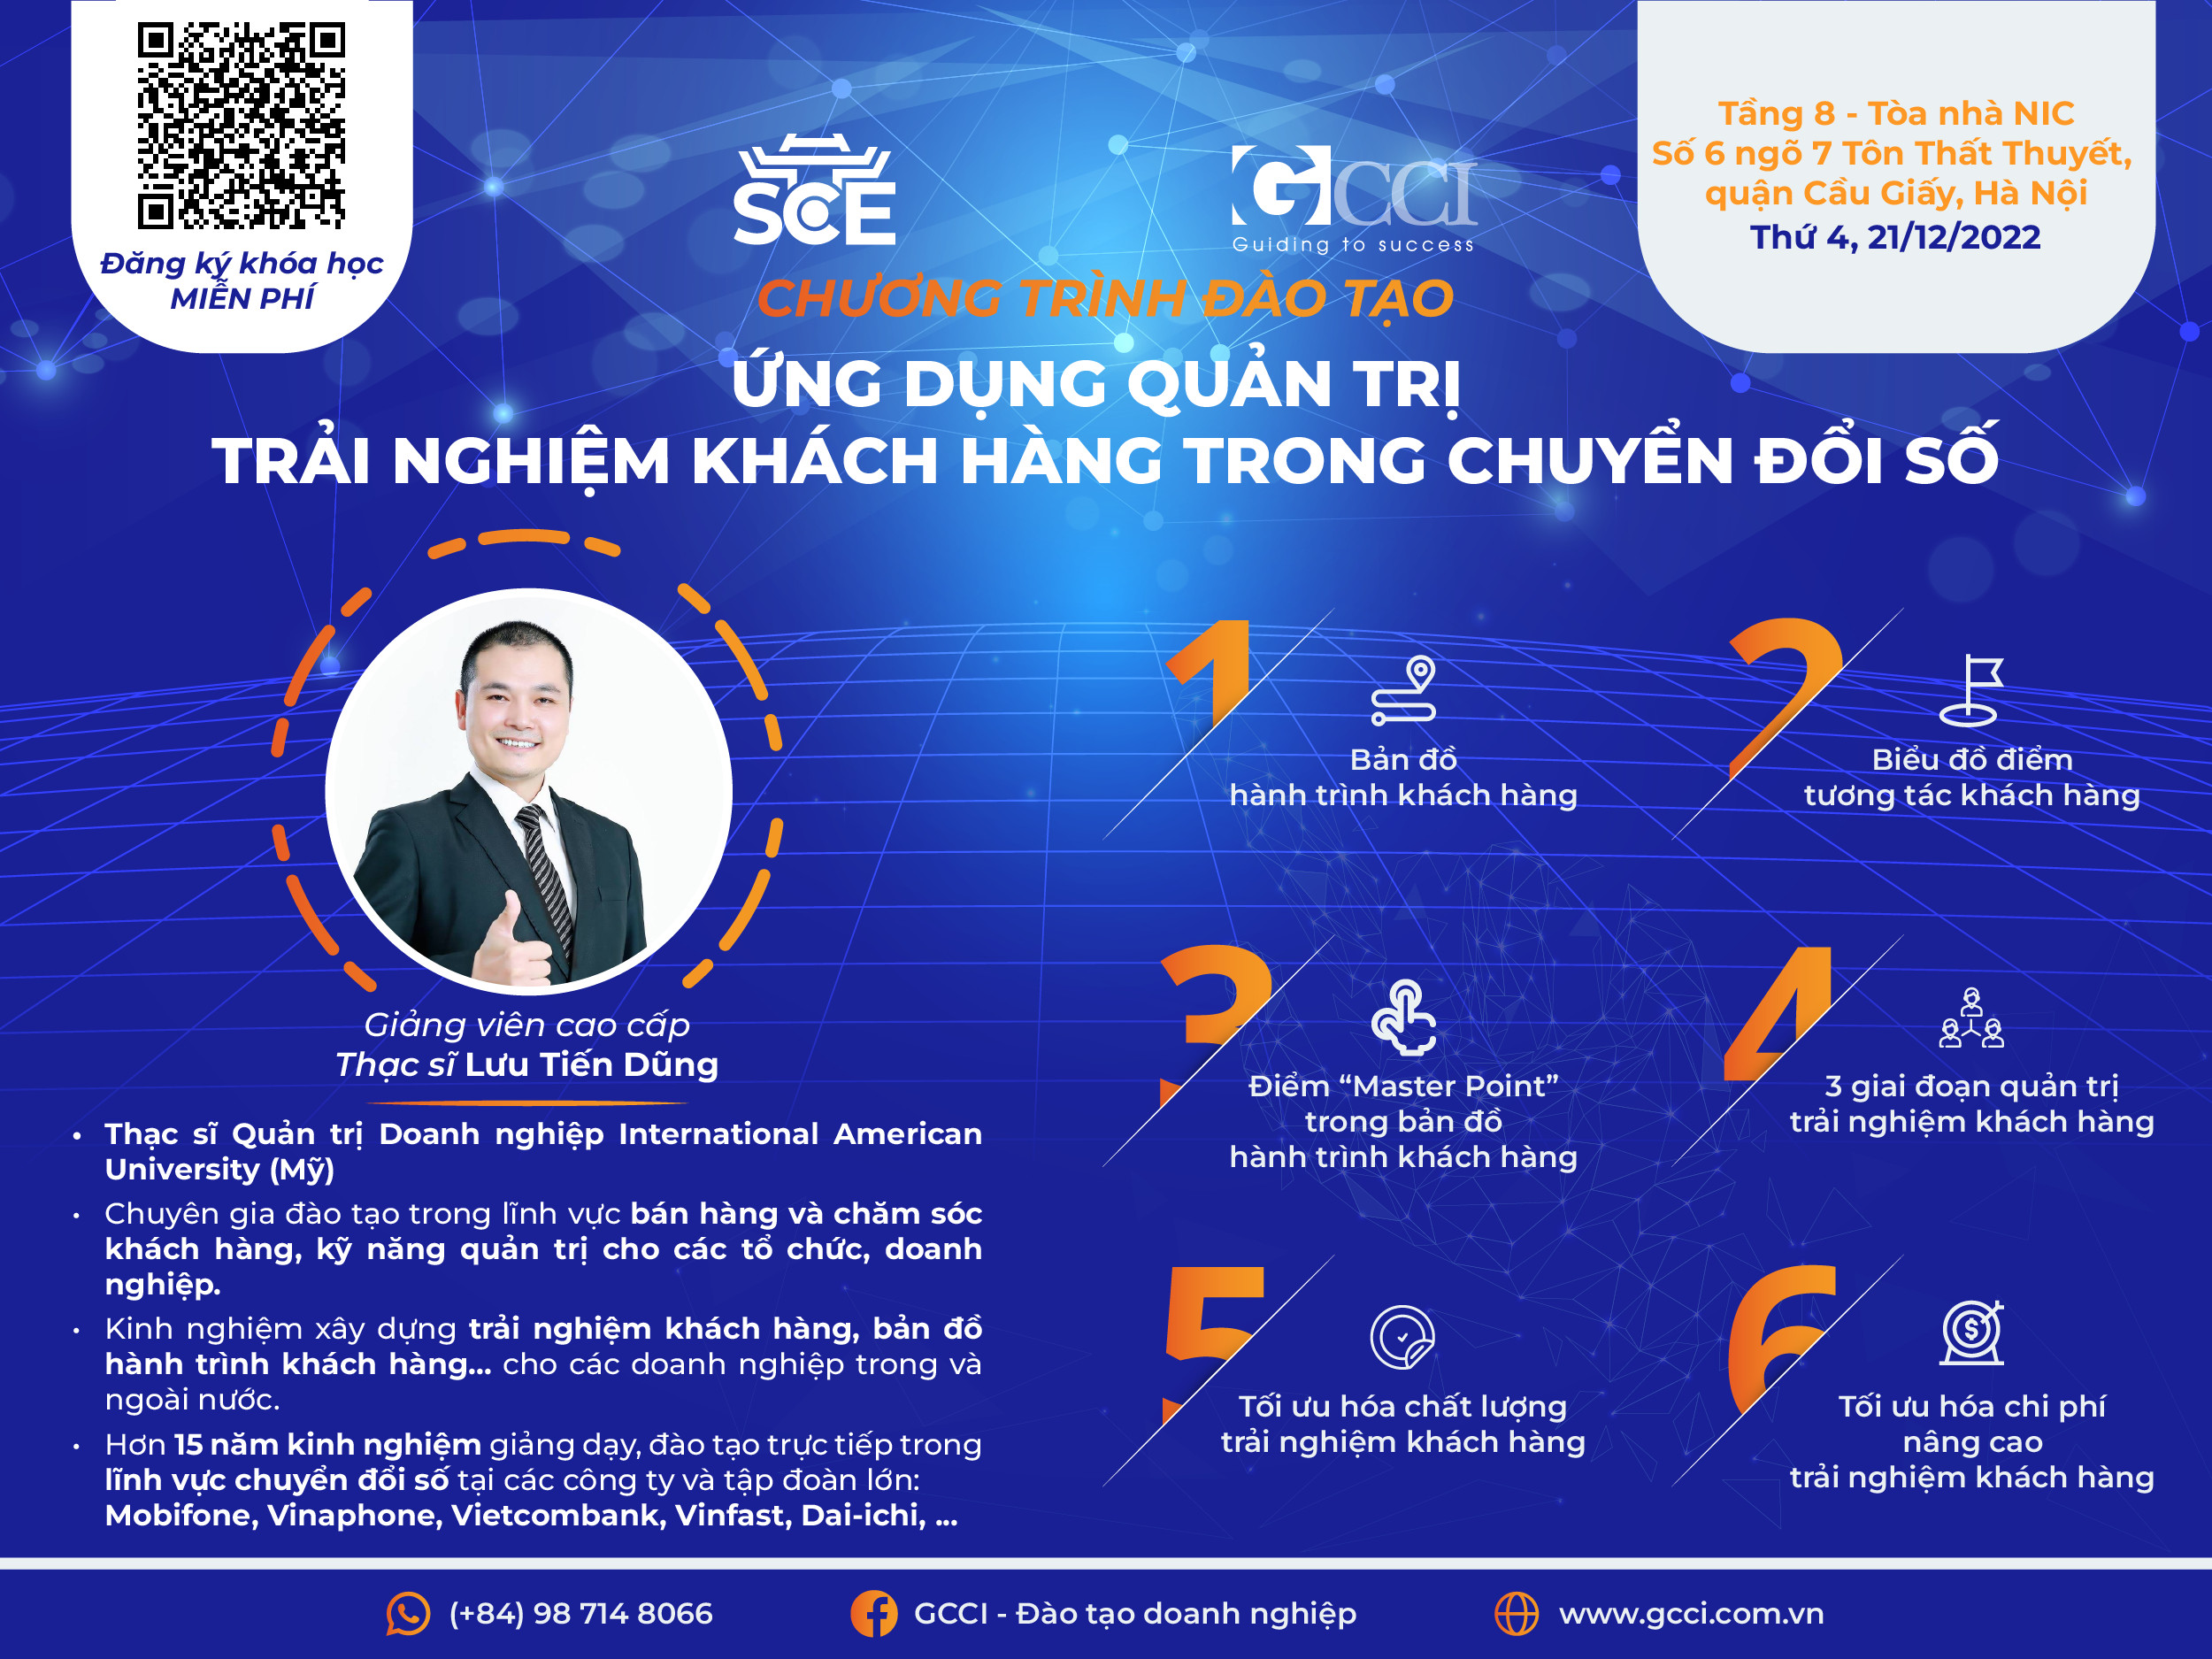 1Office đồng hành với GCCI cùng Sở Kế hoạch và Đầu tư Thành phố Hà Nội triển khai đào tạo “Ứng dụng Quản trị Trải nghiệm Khách hàng trong chuyển đổi số”